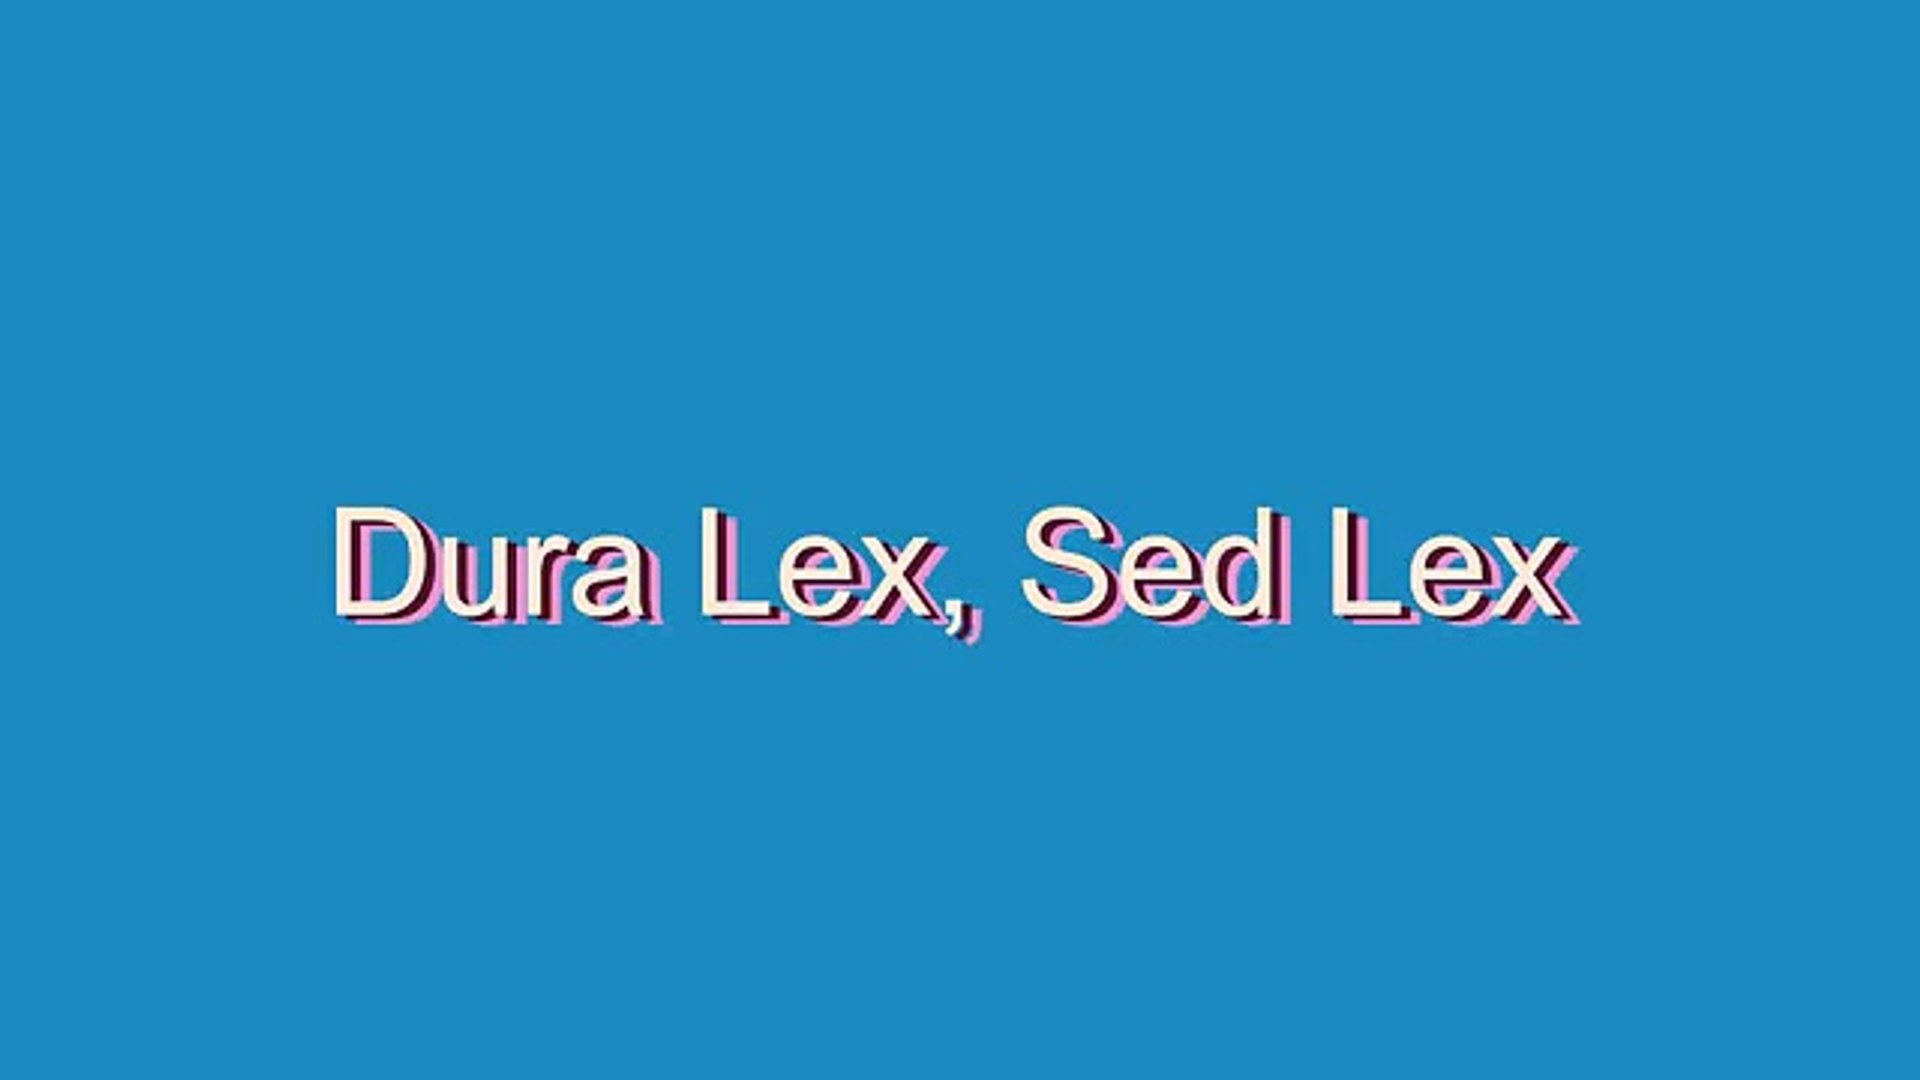 Dura lex sed lex перевод на русский. Dura Lex sed Lex перевод. «Dura Lex sed Lex» - кому принадлежит. Dura Lex sed Lex значение. Футболка dura Lex sed Lex.